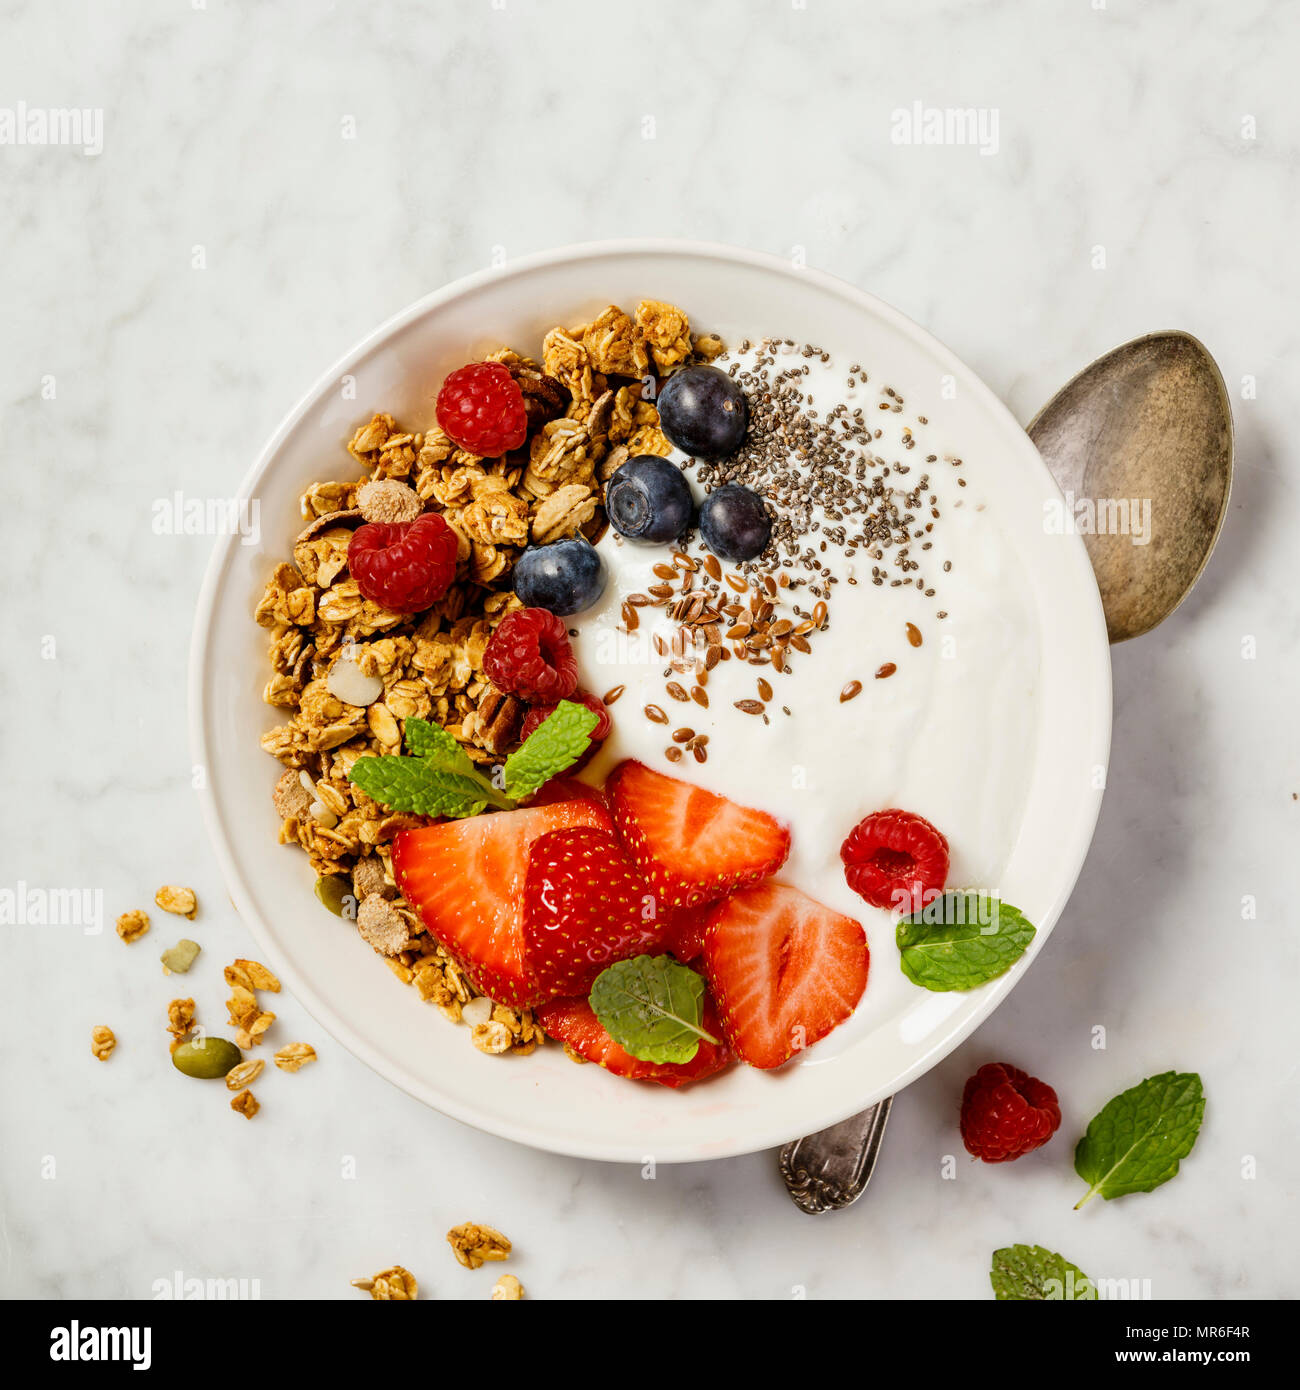 Schüssel mit hausgemachtem Müsli mit Joghurt und frischen Beeren auf weißem Hintergrund. Ansicht von oben, flach. Gesundes Frühstück Konzept. Platz für Text Stockfoto